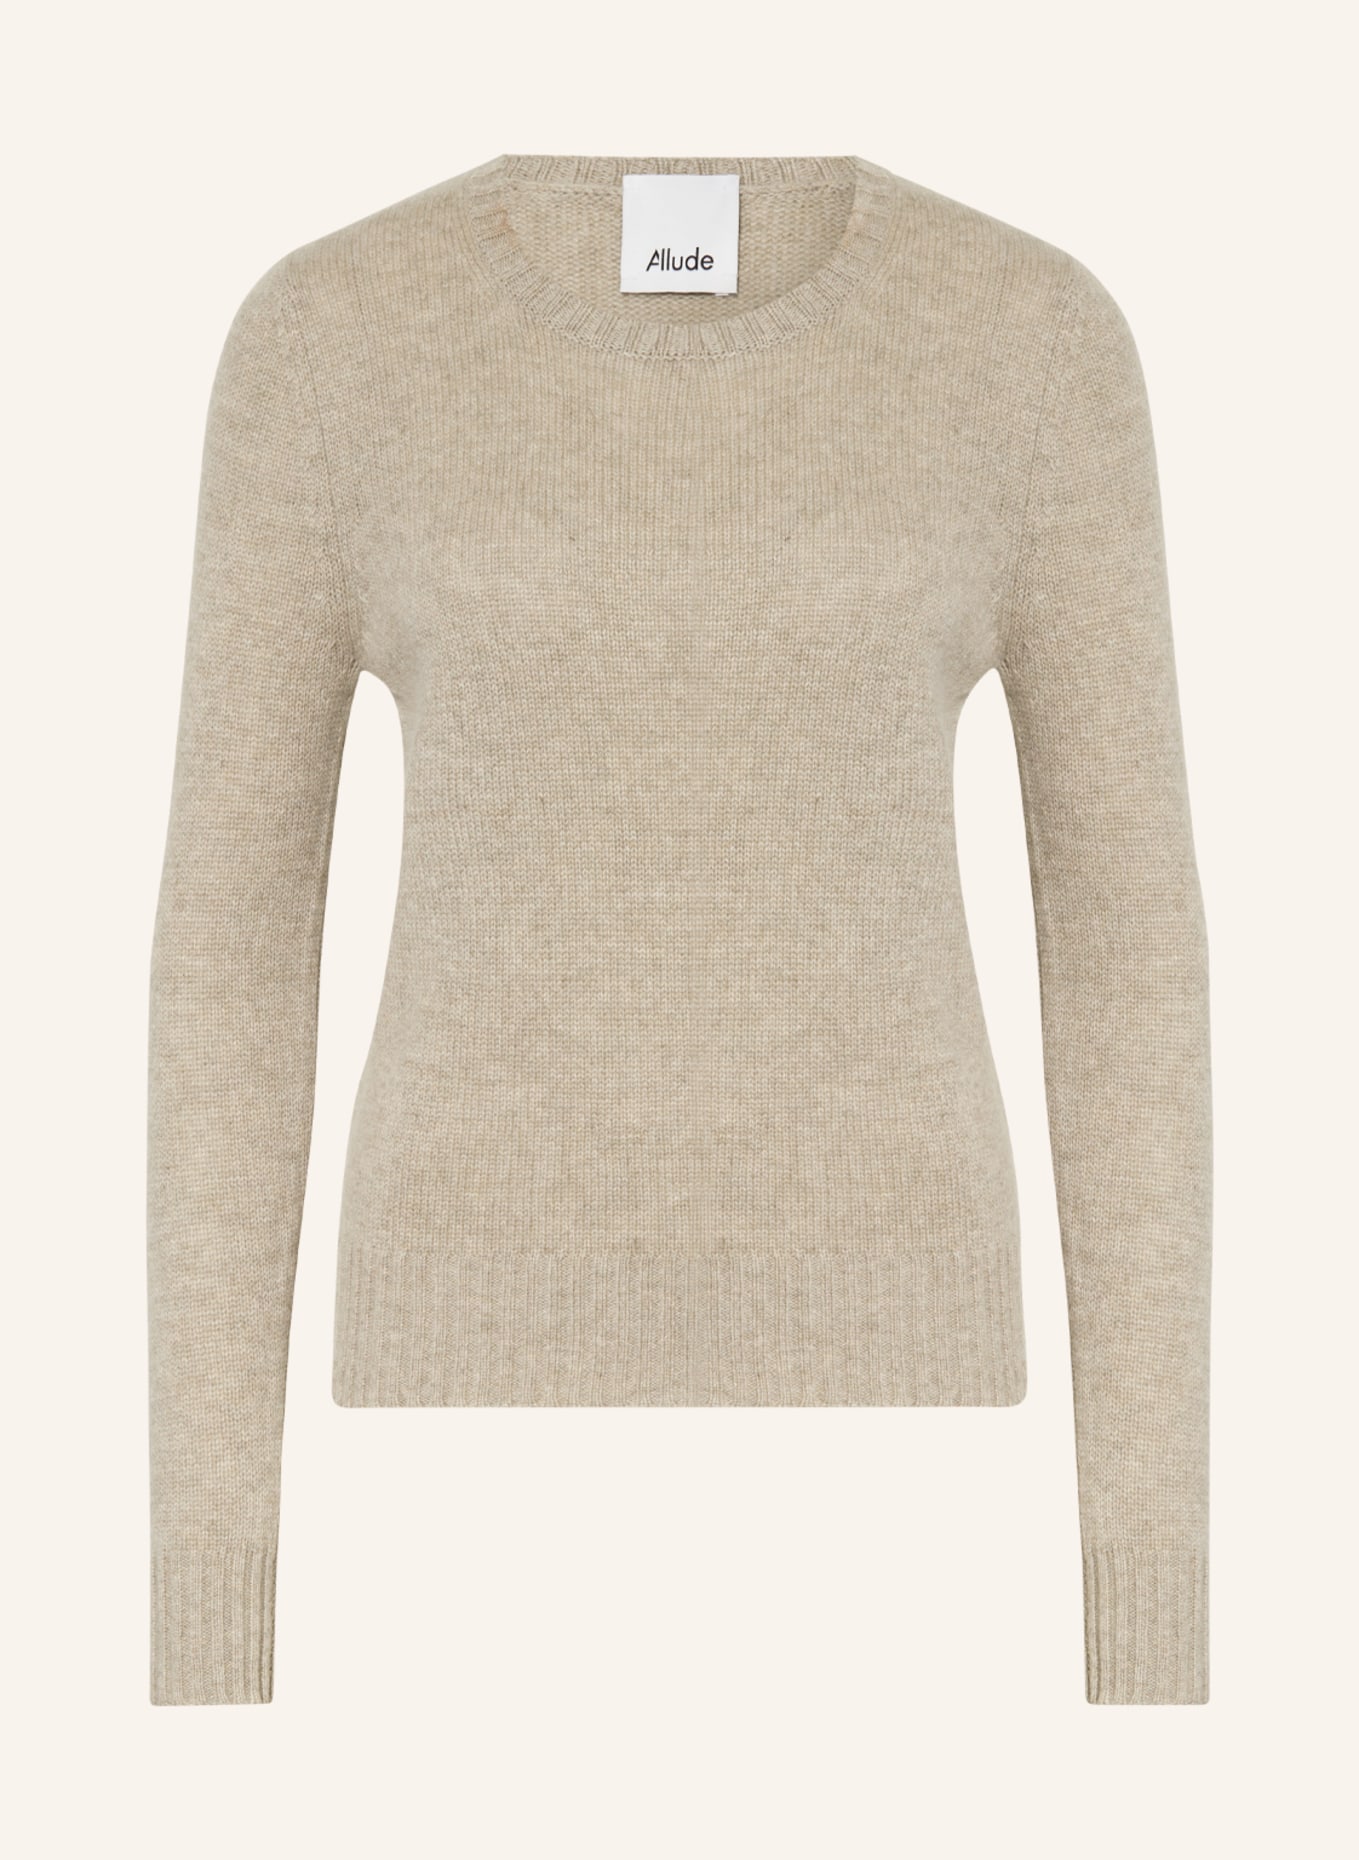 ALLUDE Cashmere-Pullover, Farbe: TAUPE (Bild 1)